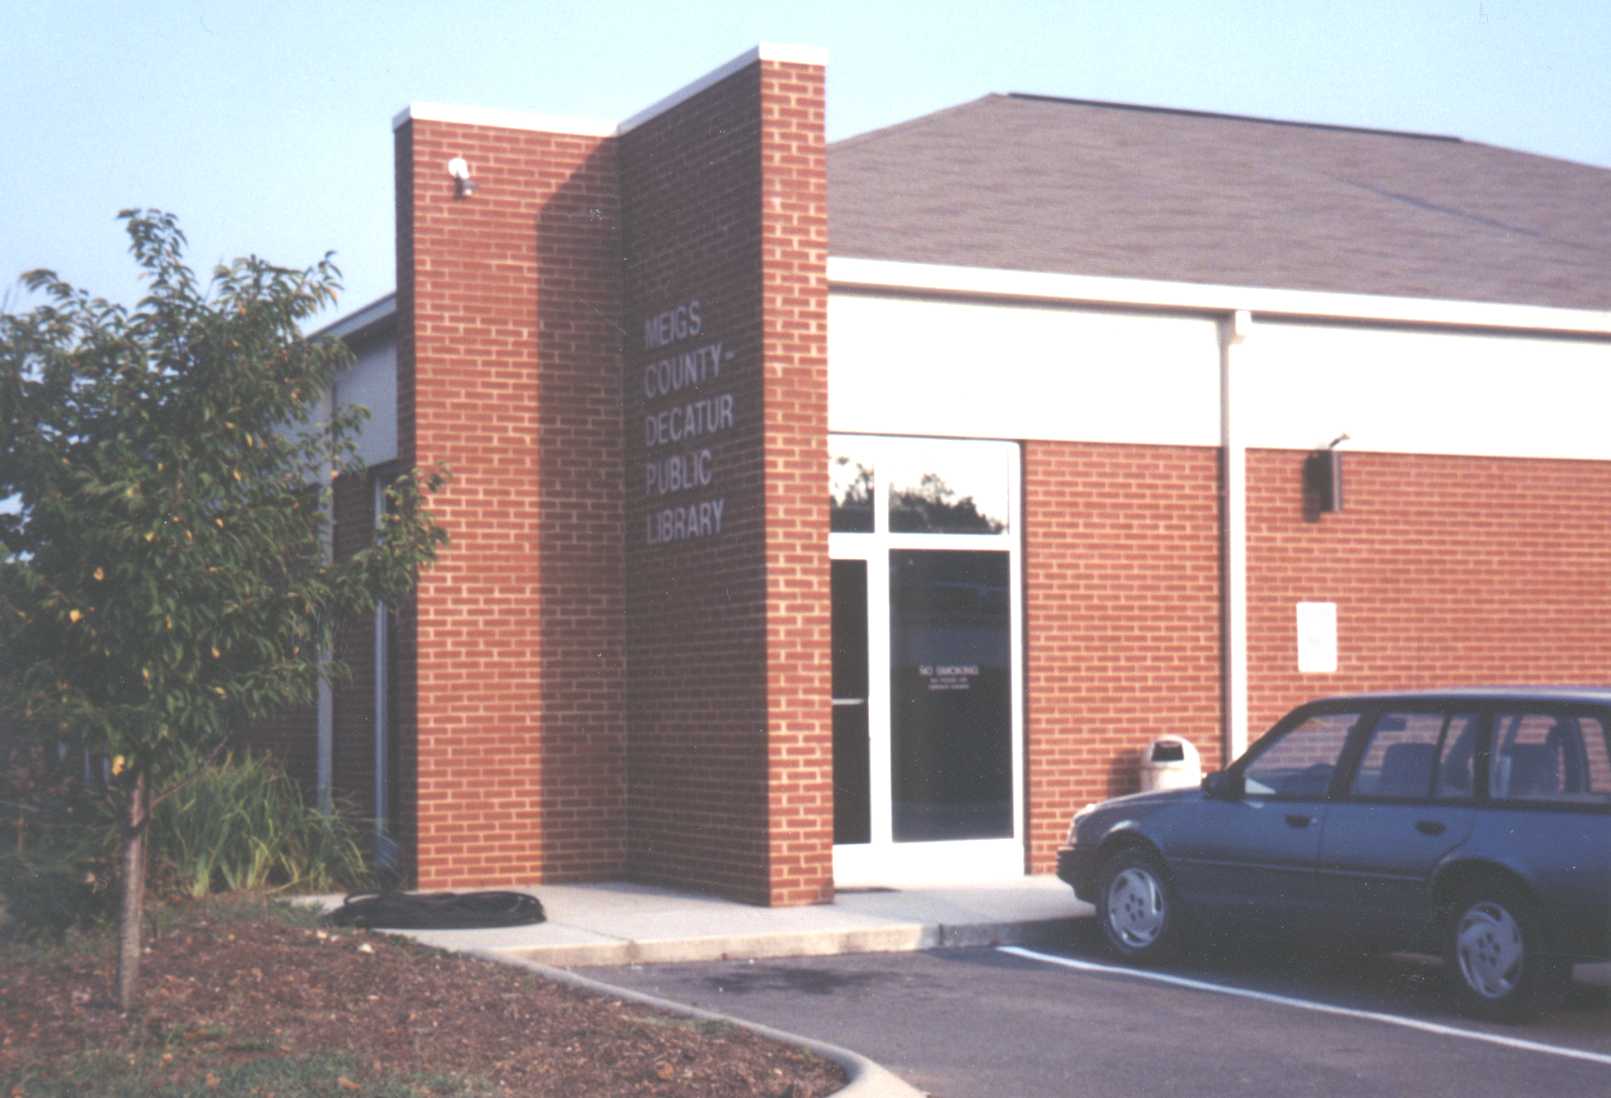 Meigs - Decatur Public Library